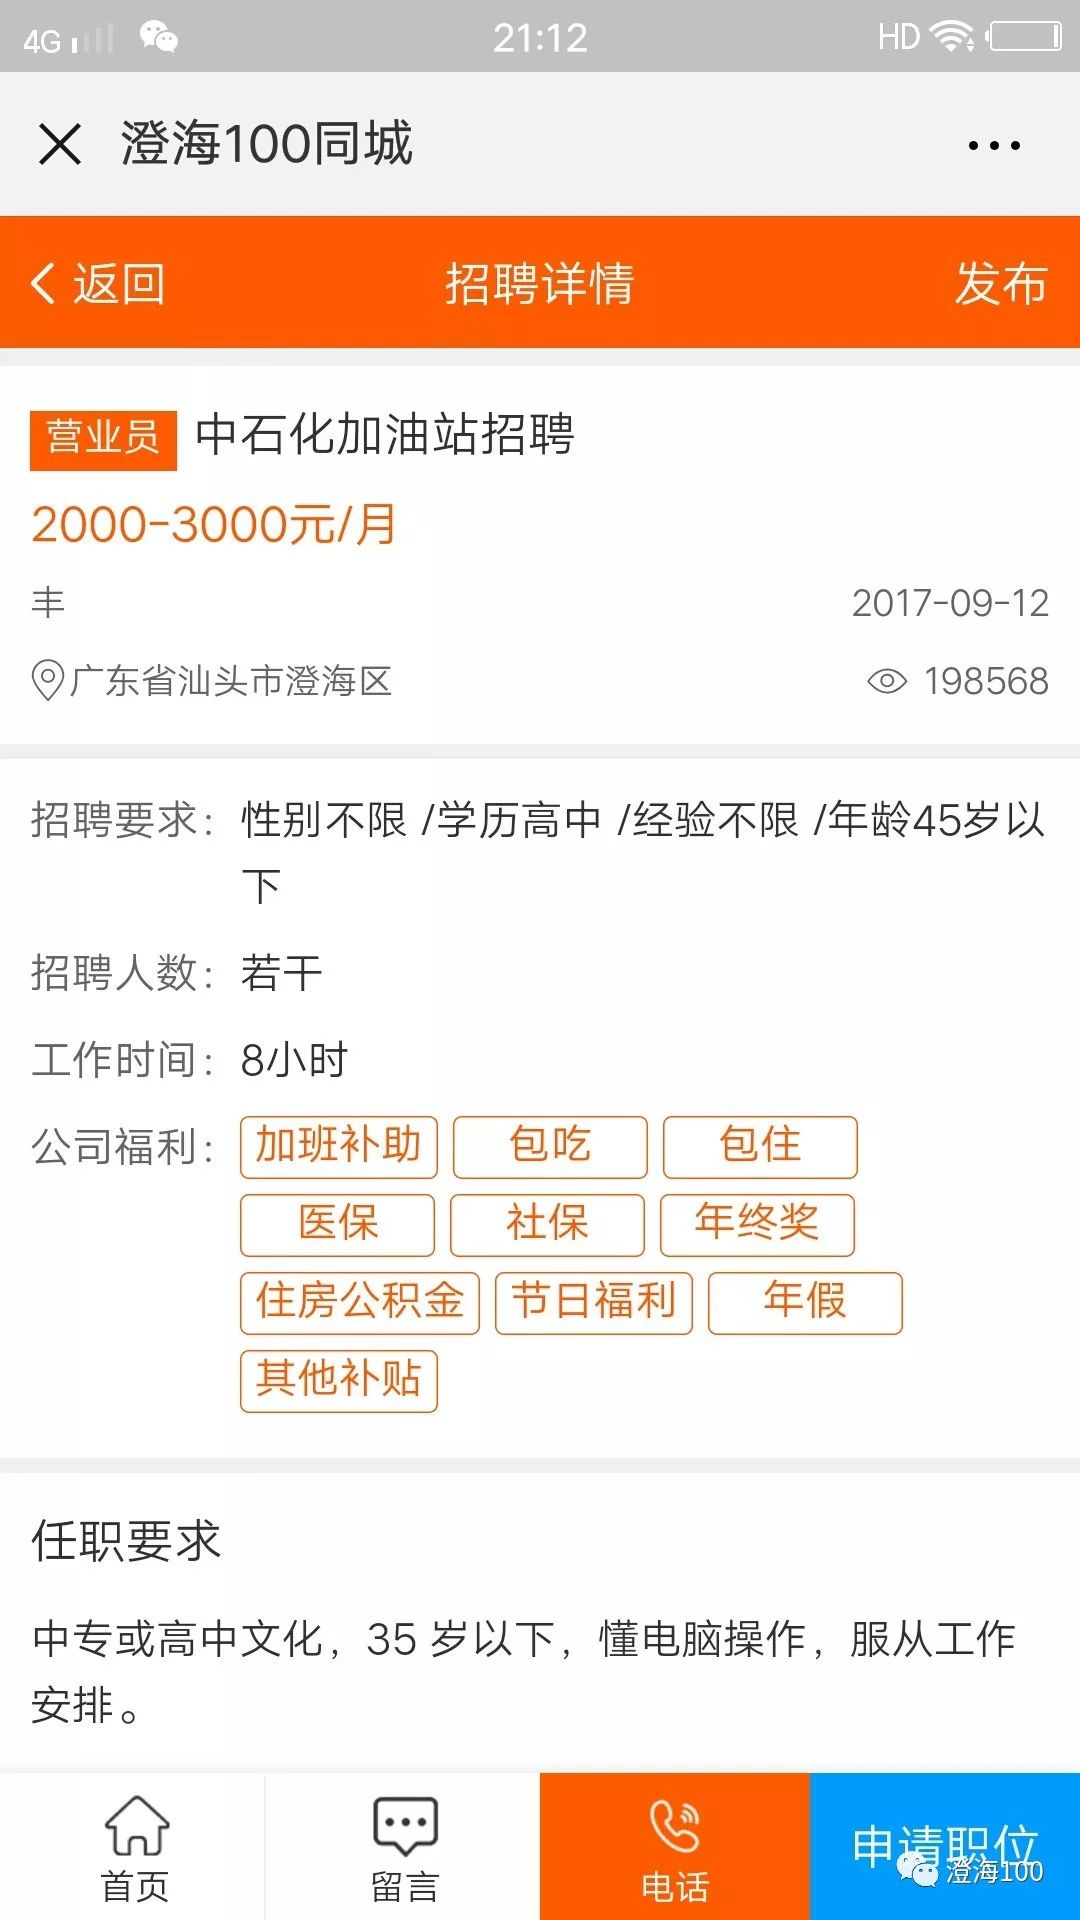 【同城】8月8日澄海招聘信息汇总,有土豪